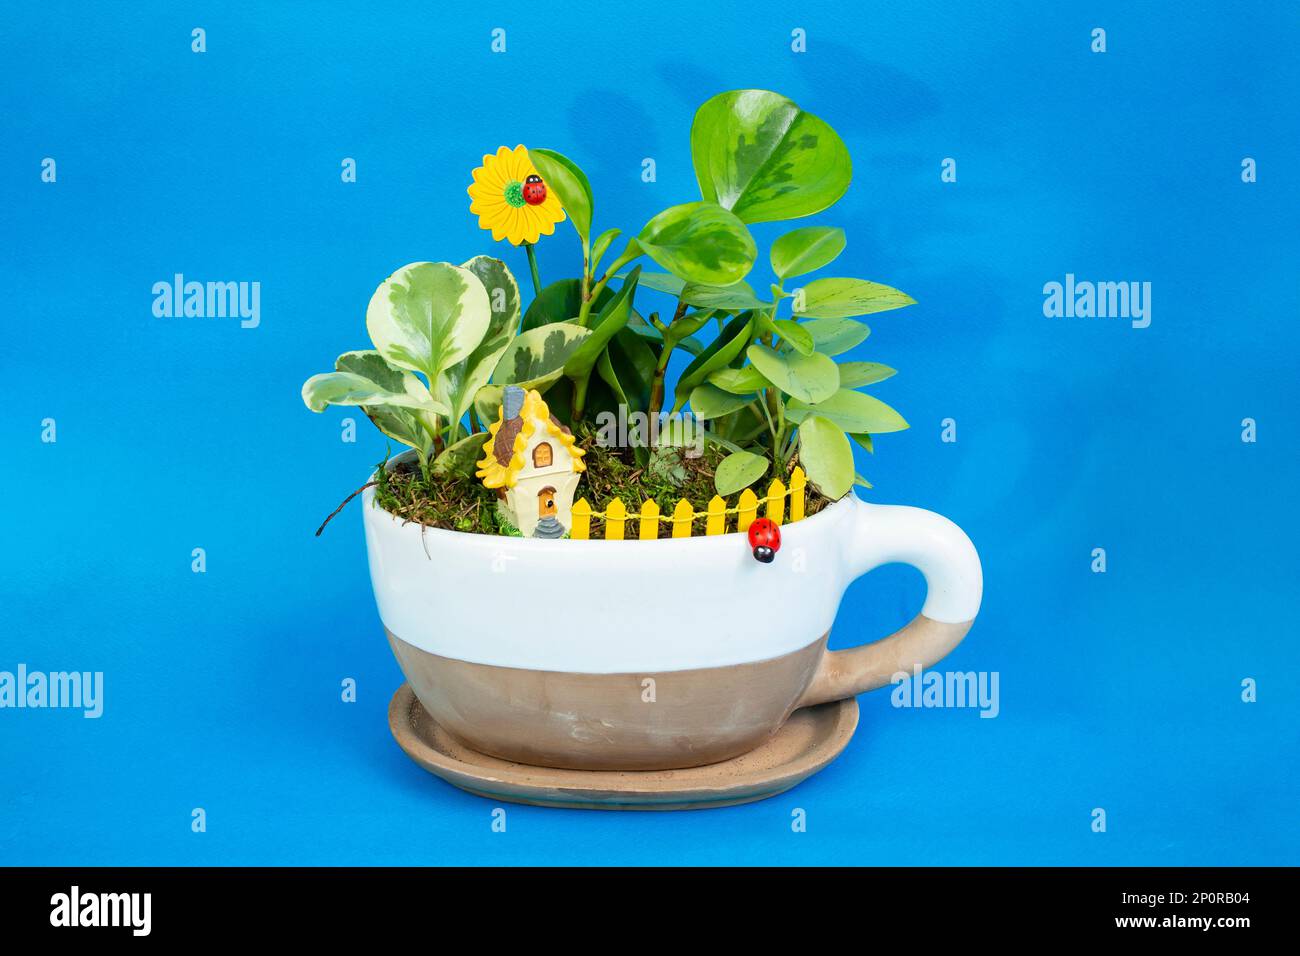 Plantes vertes dans un pot en forme de tasse, sur fond bleu Banque D'Images